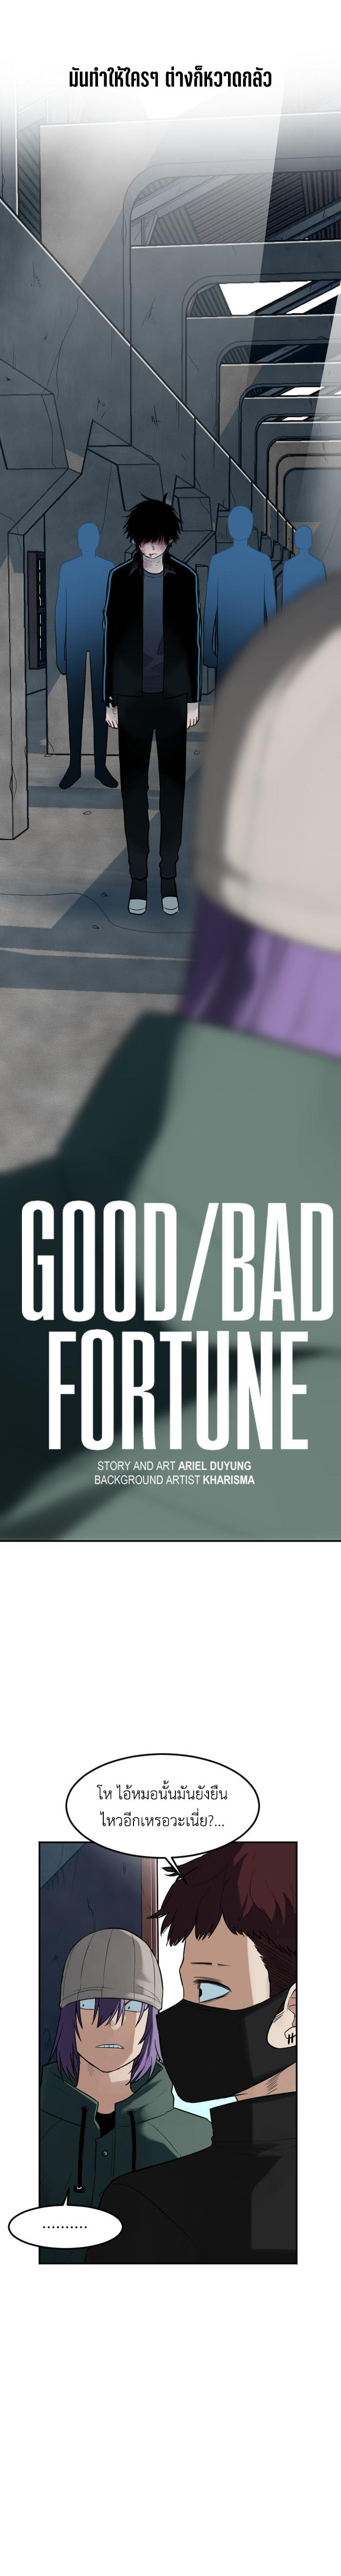 GoodBad Fortune 70 02